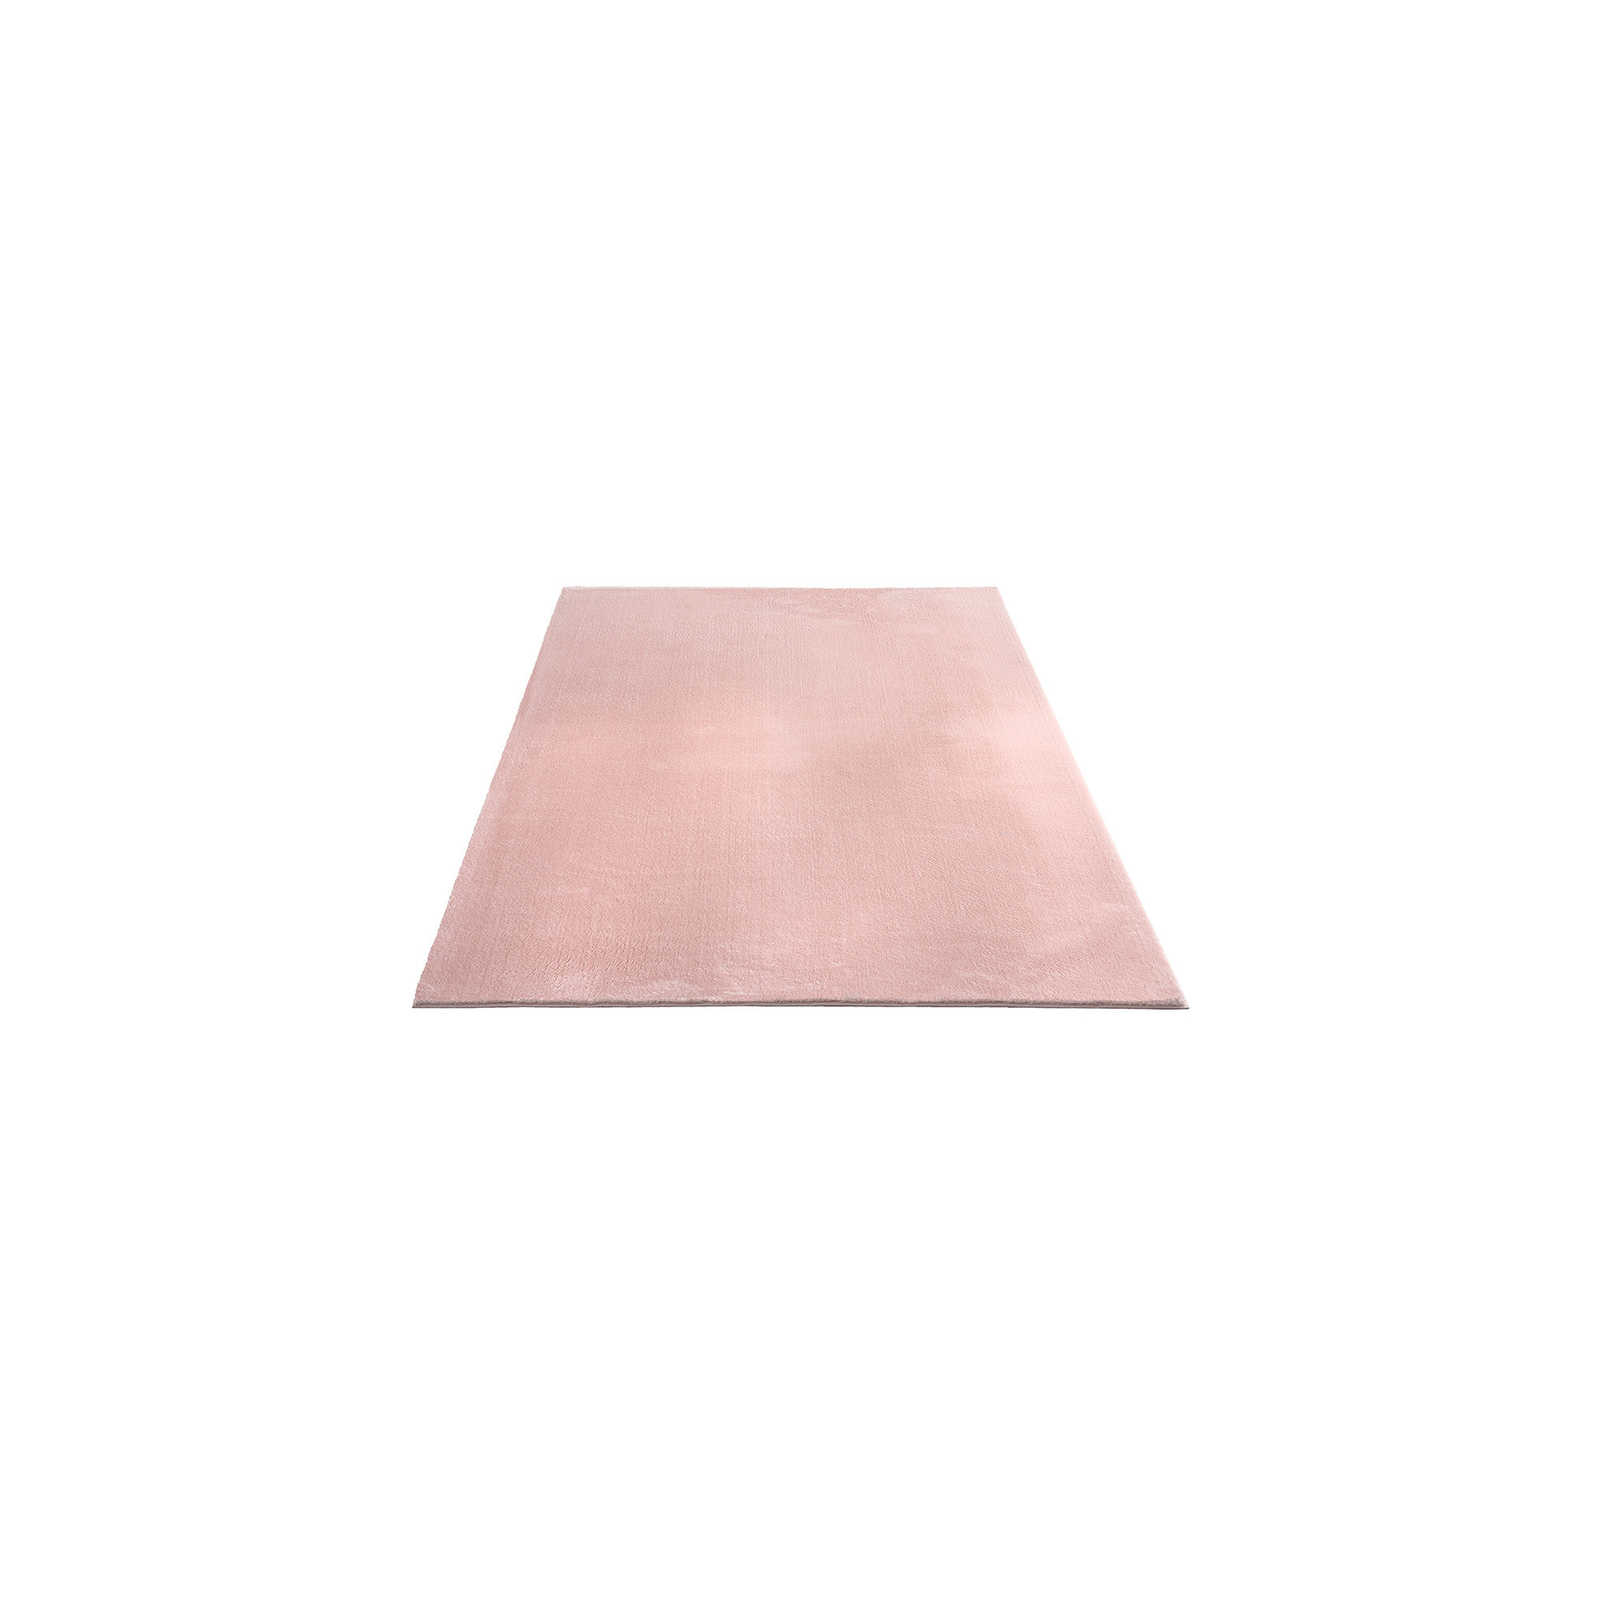 Zarter Hochflor Teppich in Rosa – 170 x 120 cm
